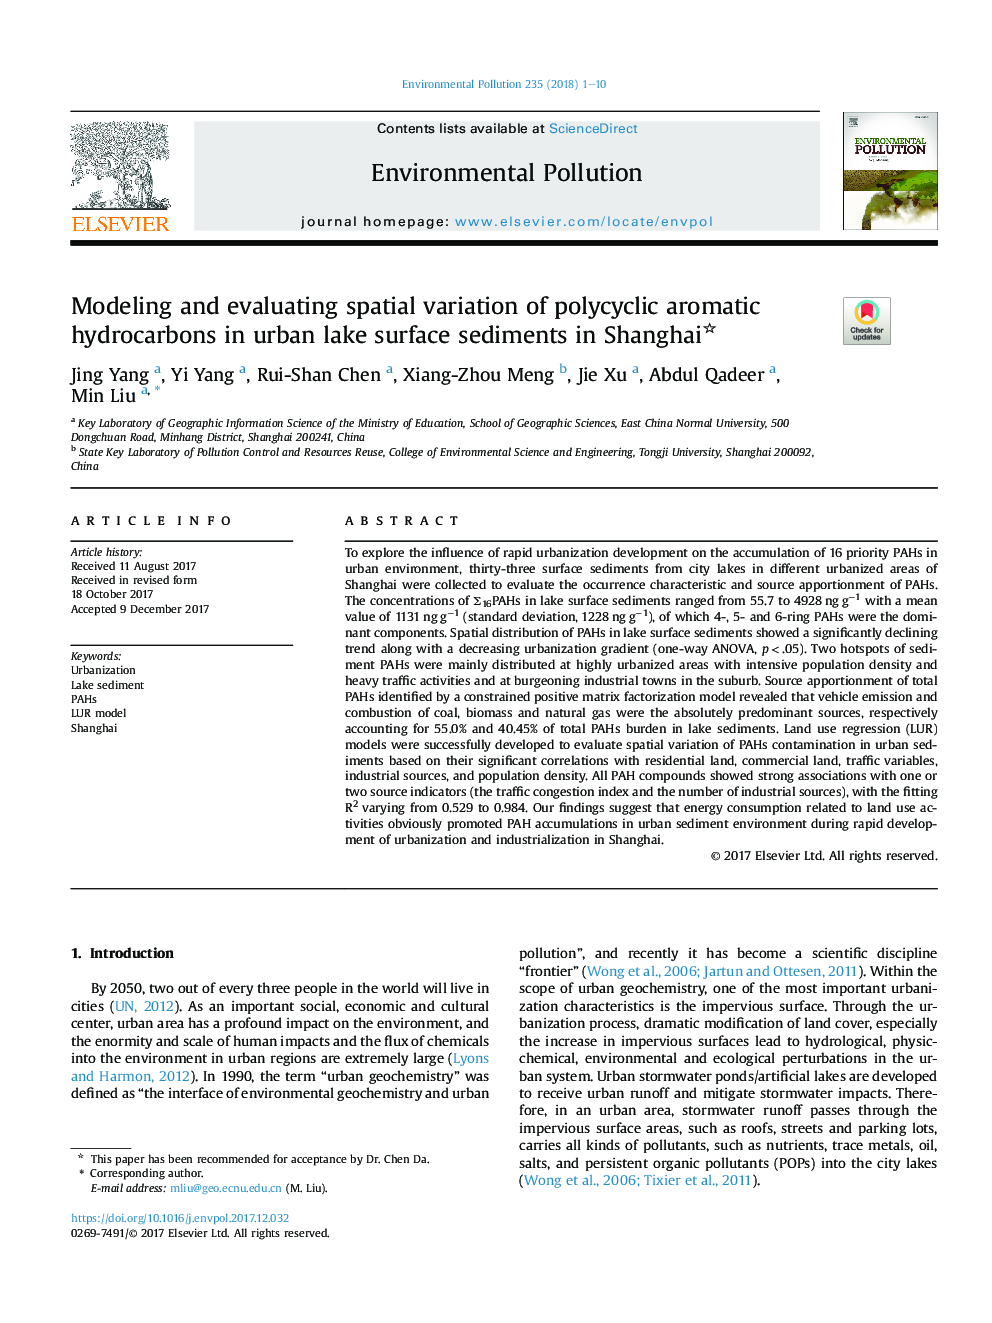 مدلسازی و ارزیابی تنوع فضایی هیدروکربن های آروماتیک چند حلقه ای در رسوبات سطح دریاچه شهری در شانگهای 